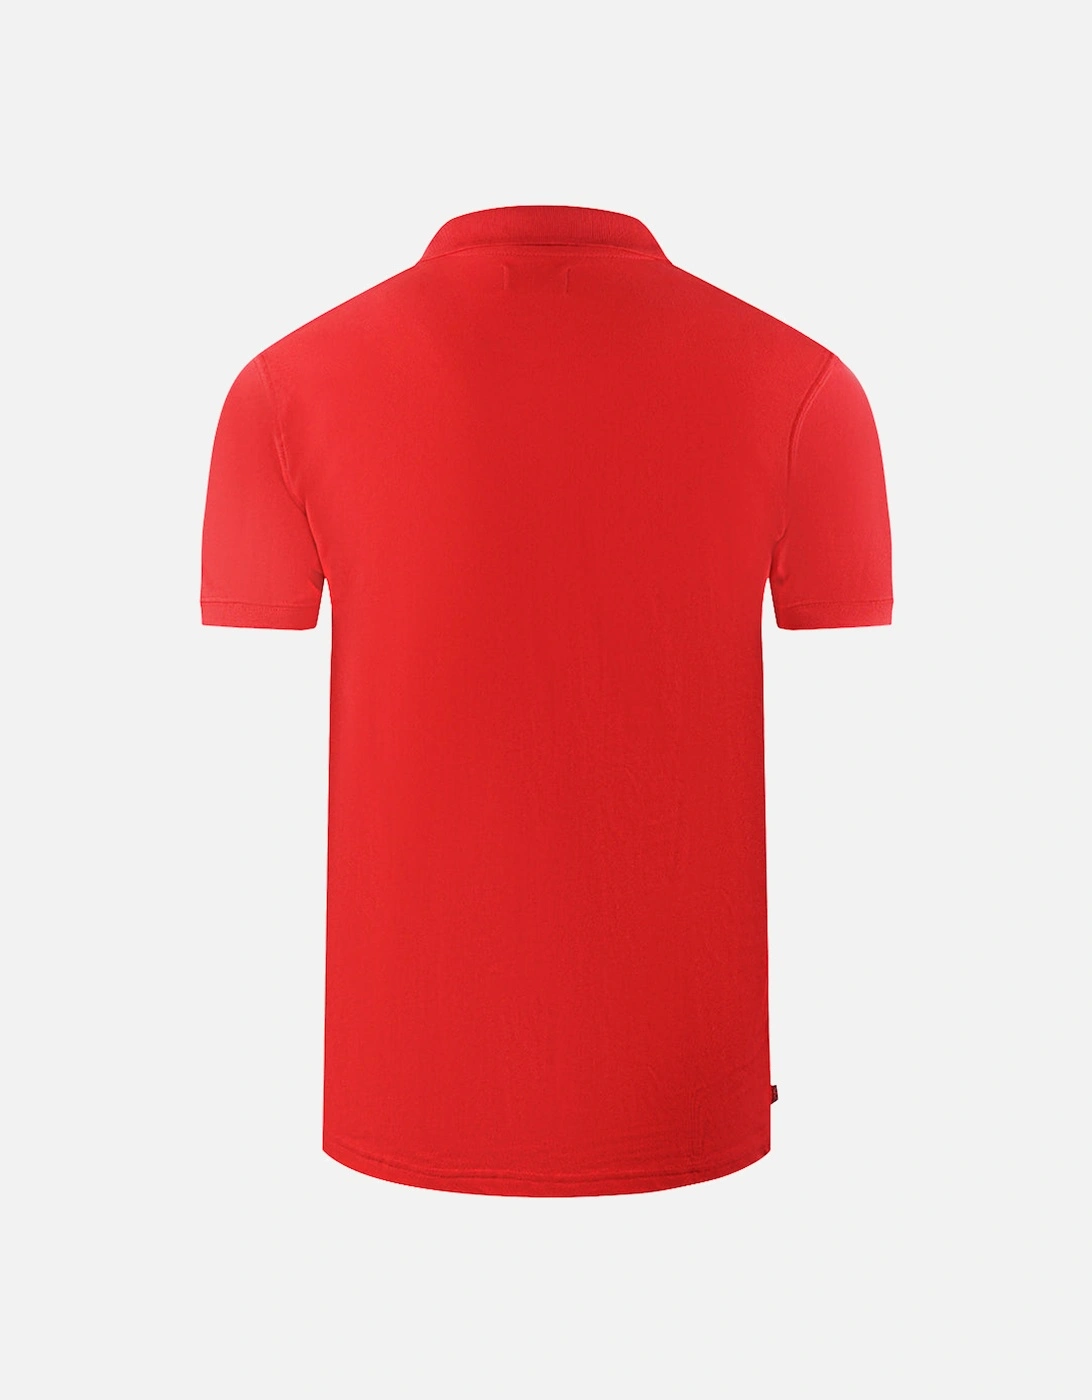 Brand Logo Plain Red Polo Shirt